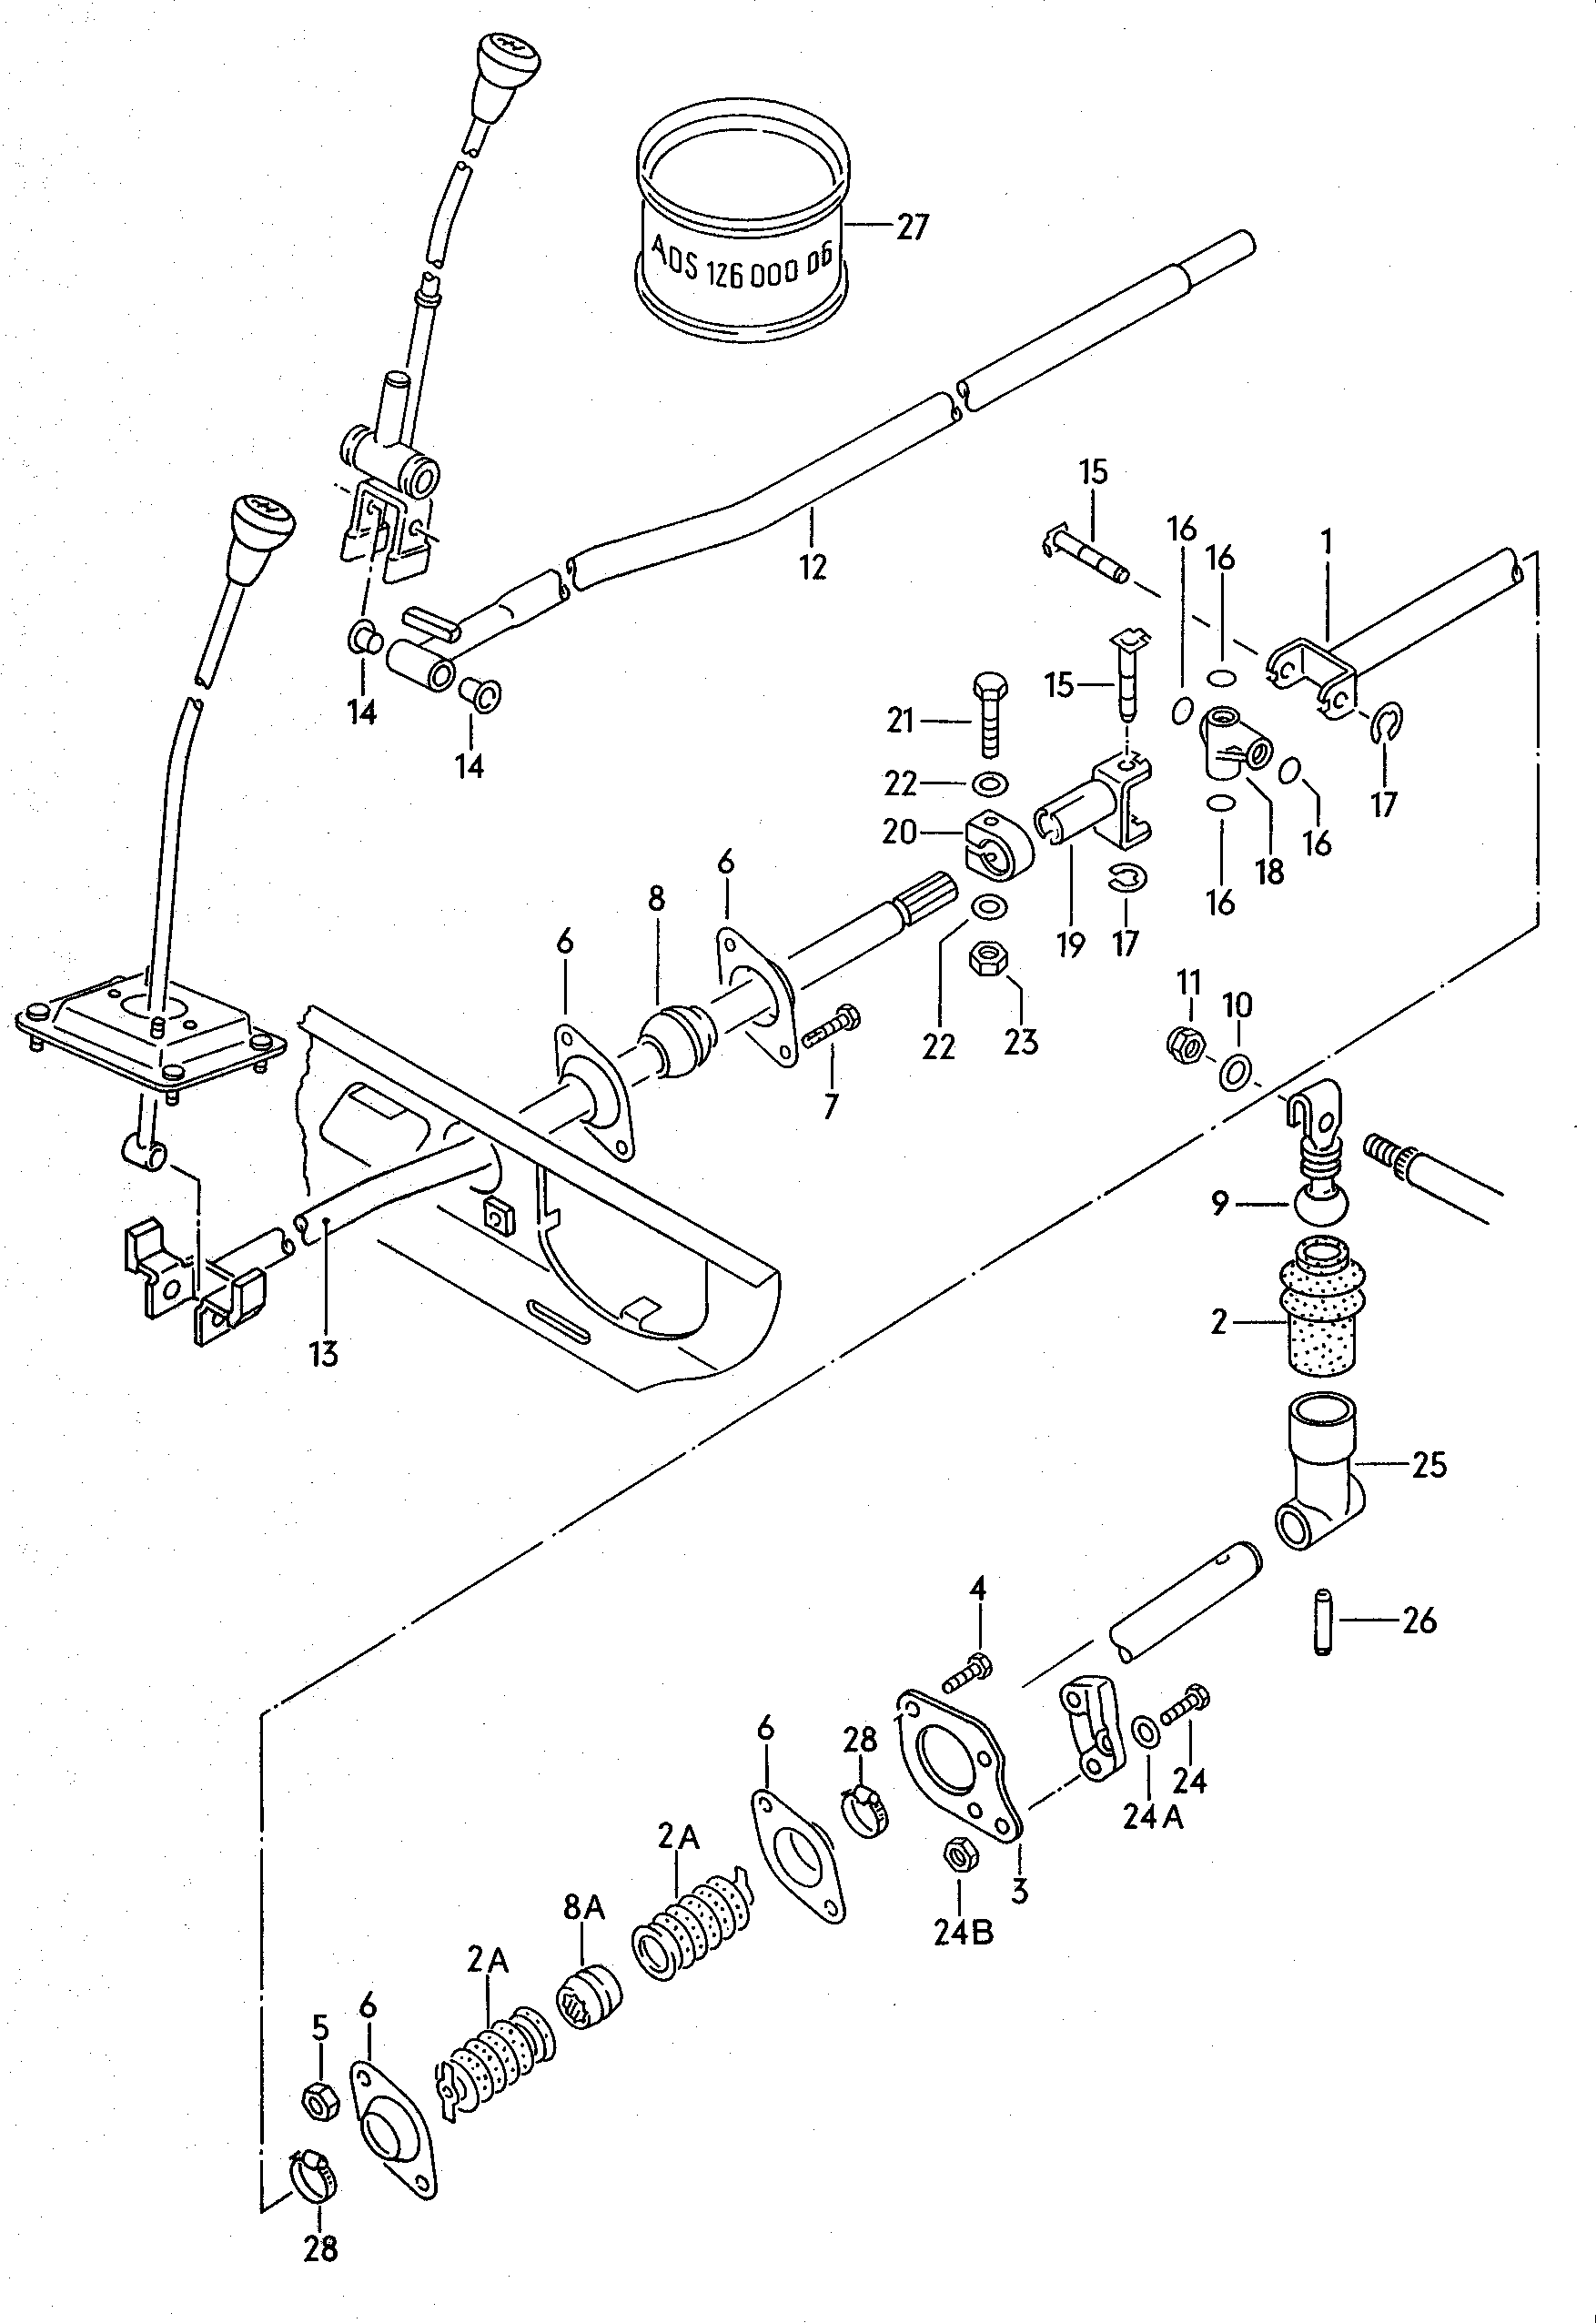 Schakelstangen voor schakel-<br>mechanisme<br> F 24-D-000 001>>  - Typ 2/syncro - t2